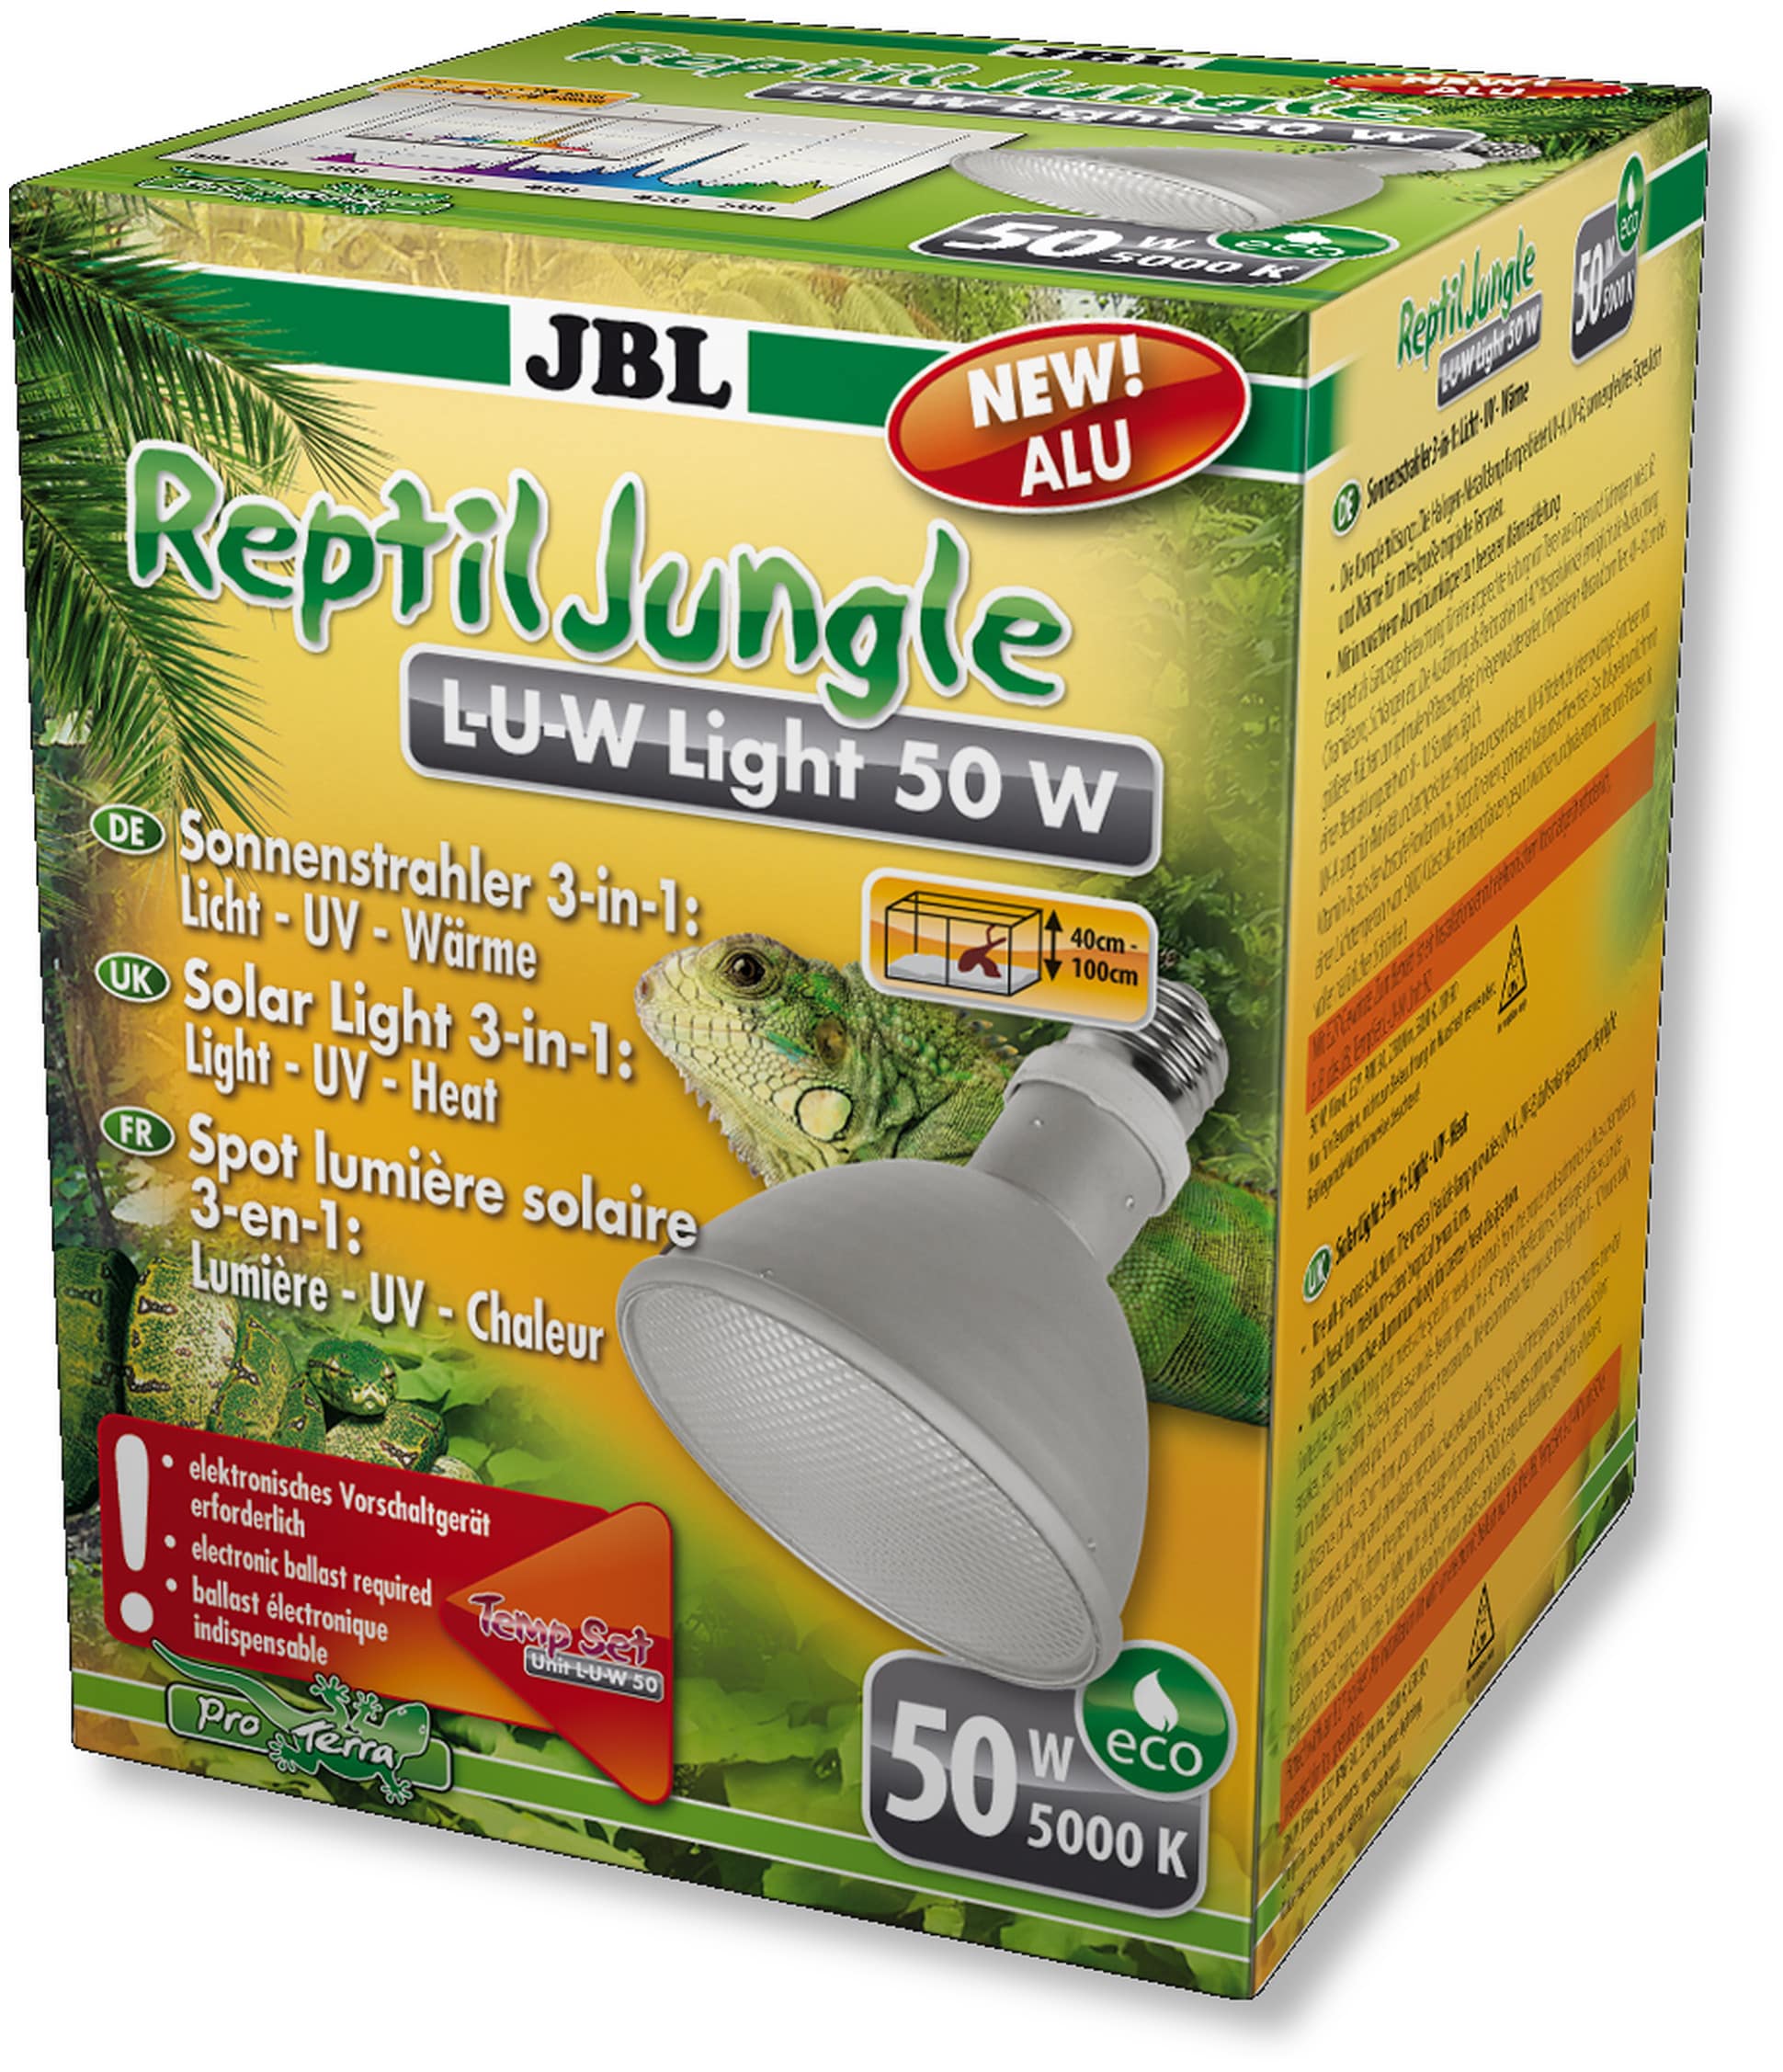 JBL ReptilJungle L-U-W Light alu 50W spot HQI en aluminium pour la reproduction du soleil en terrarium de type tropical